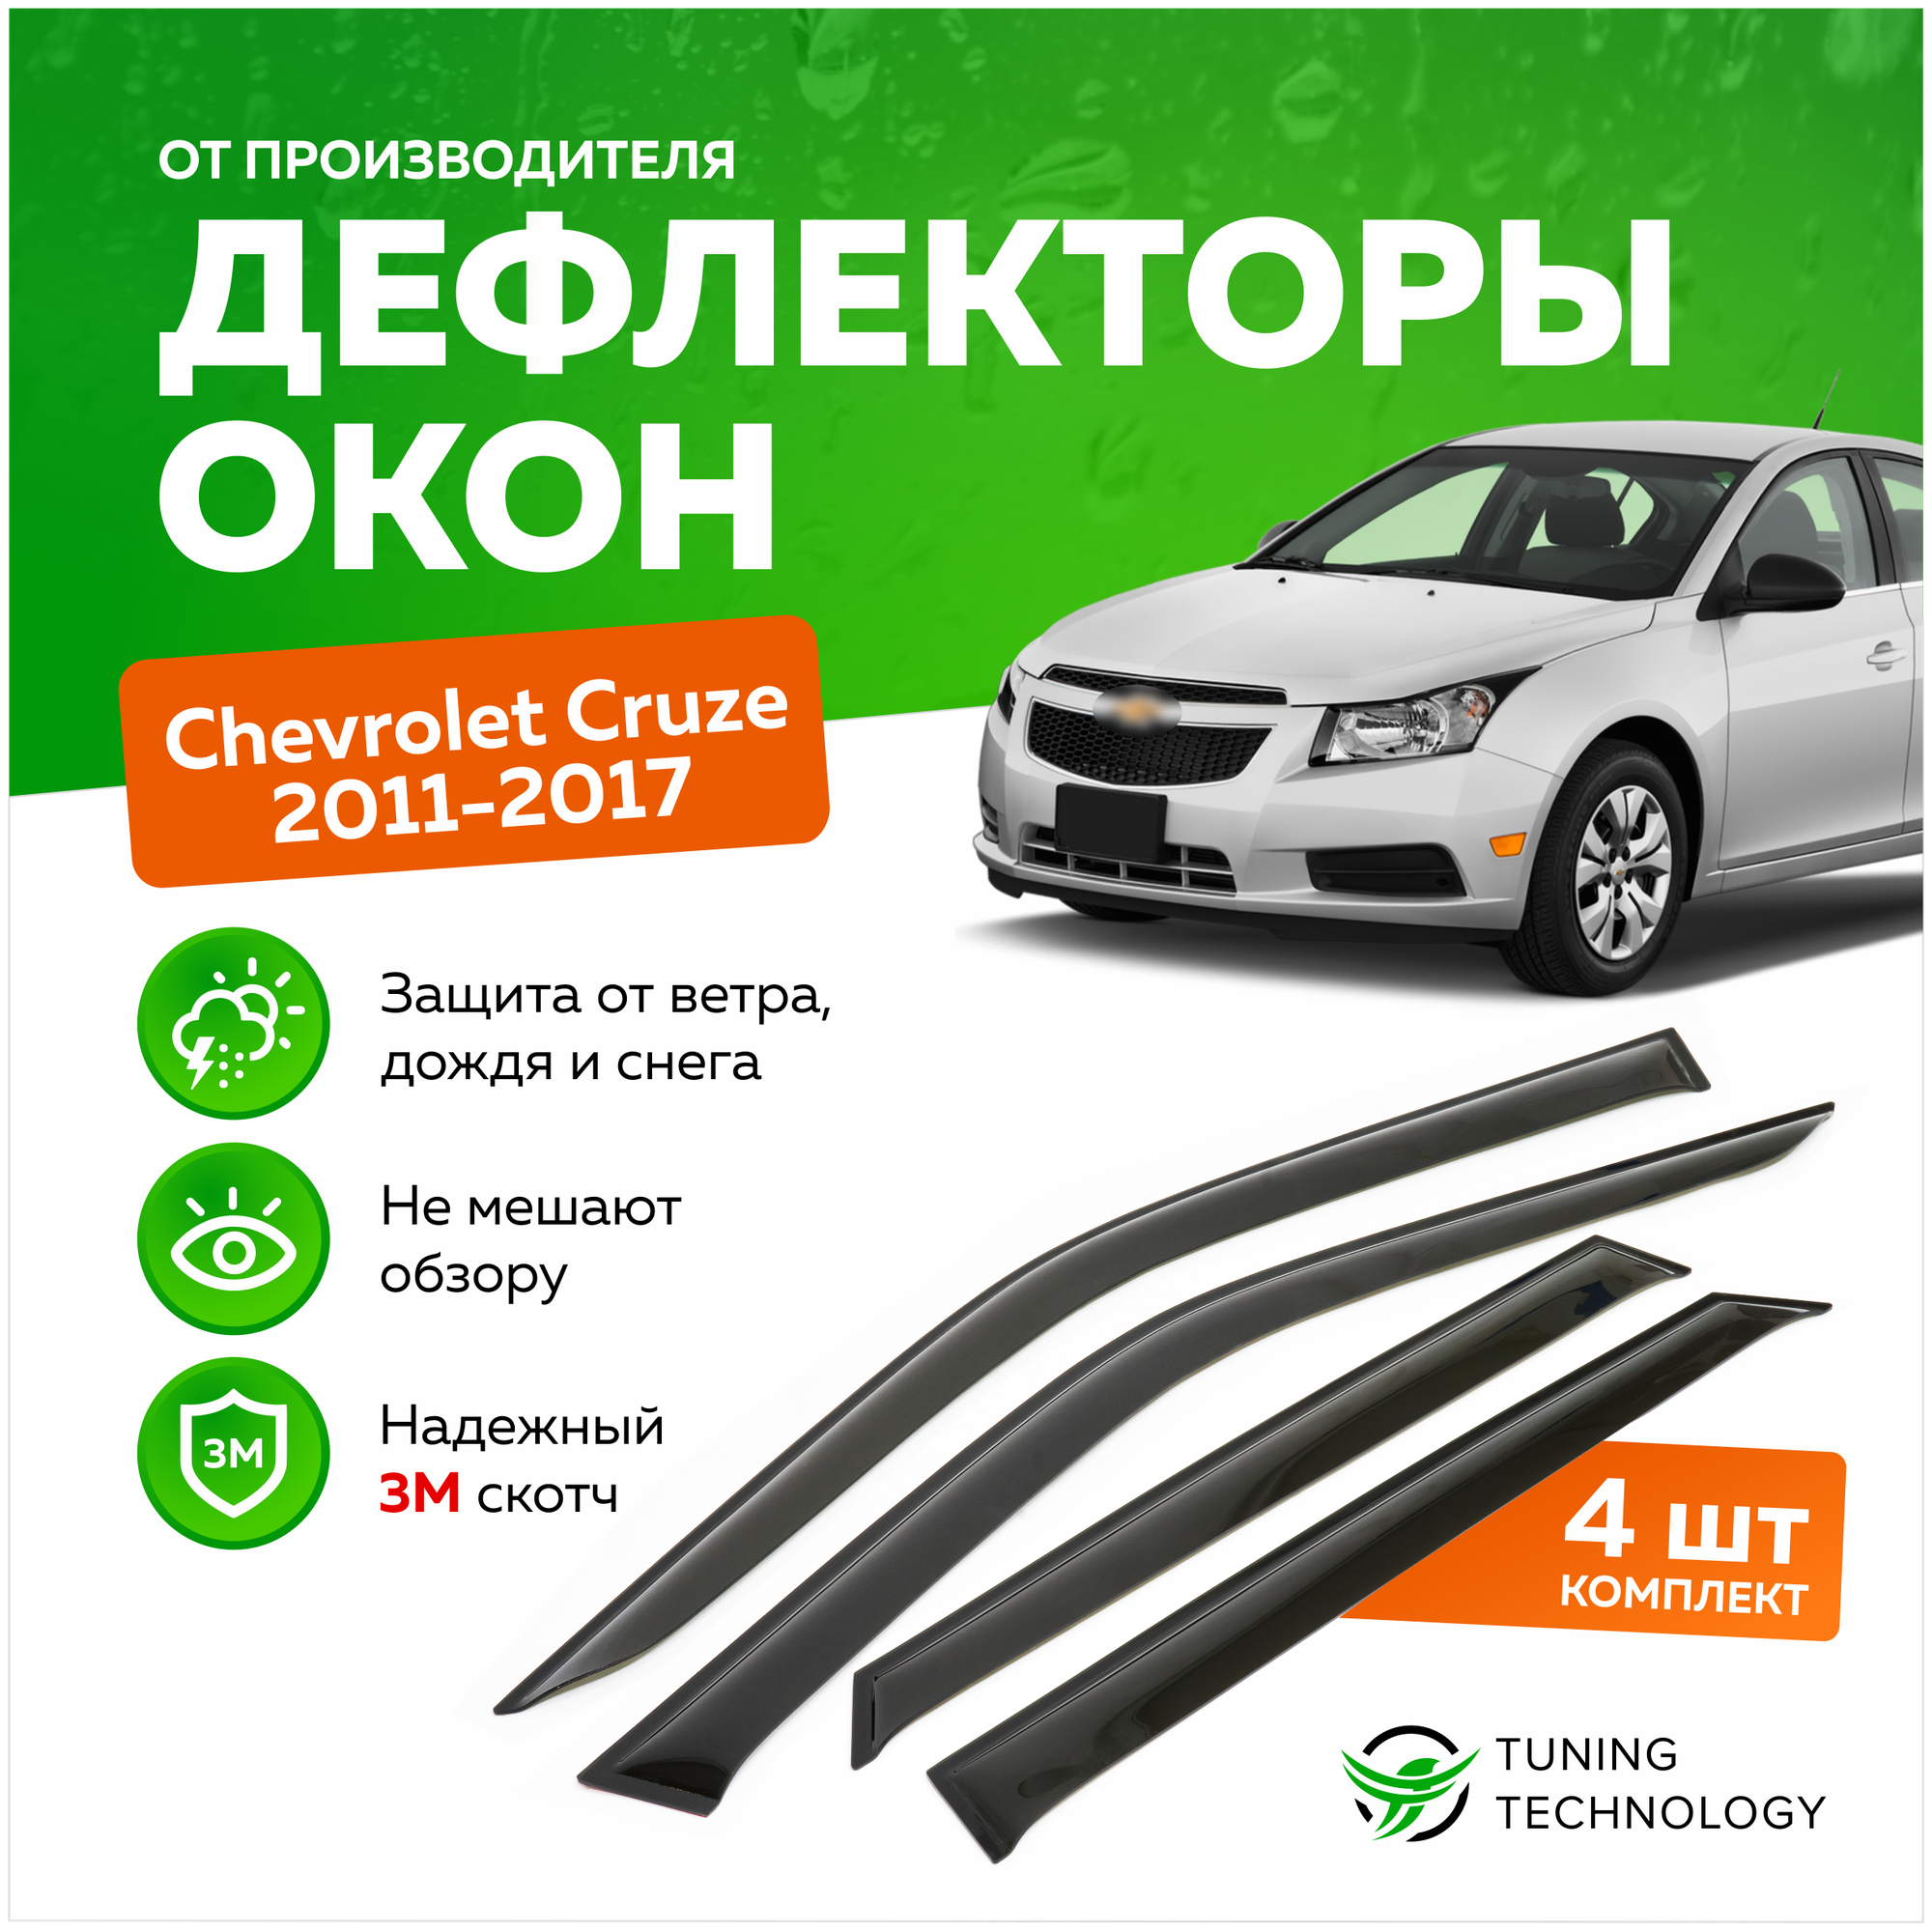 Дефлекторы боковых окон Chevrolet Cruze (Шевроле Круз) хэтчбек 2011-2017 ветровики на двери автомобиля ТТ